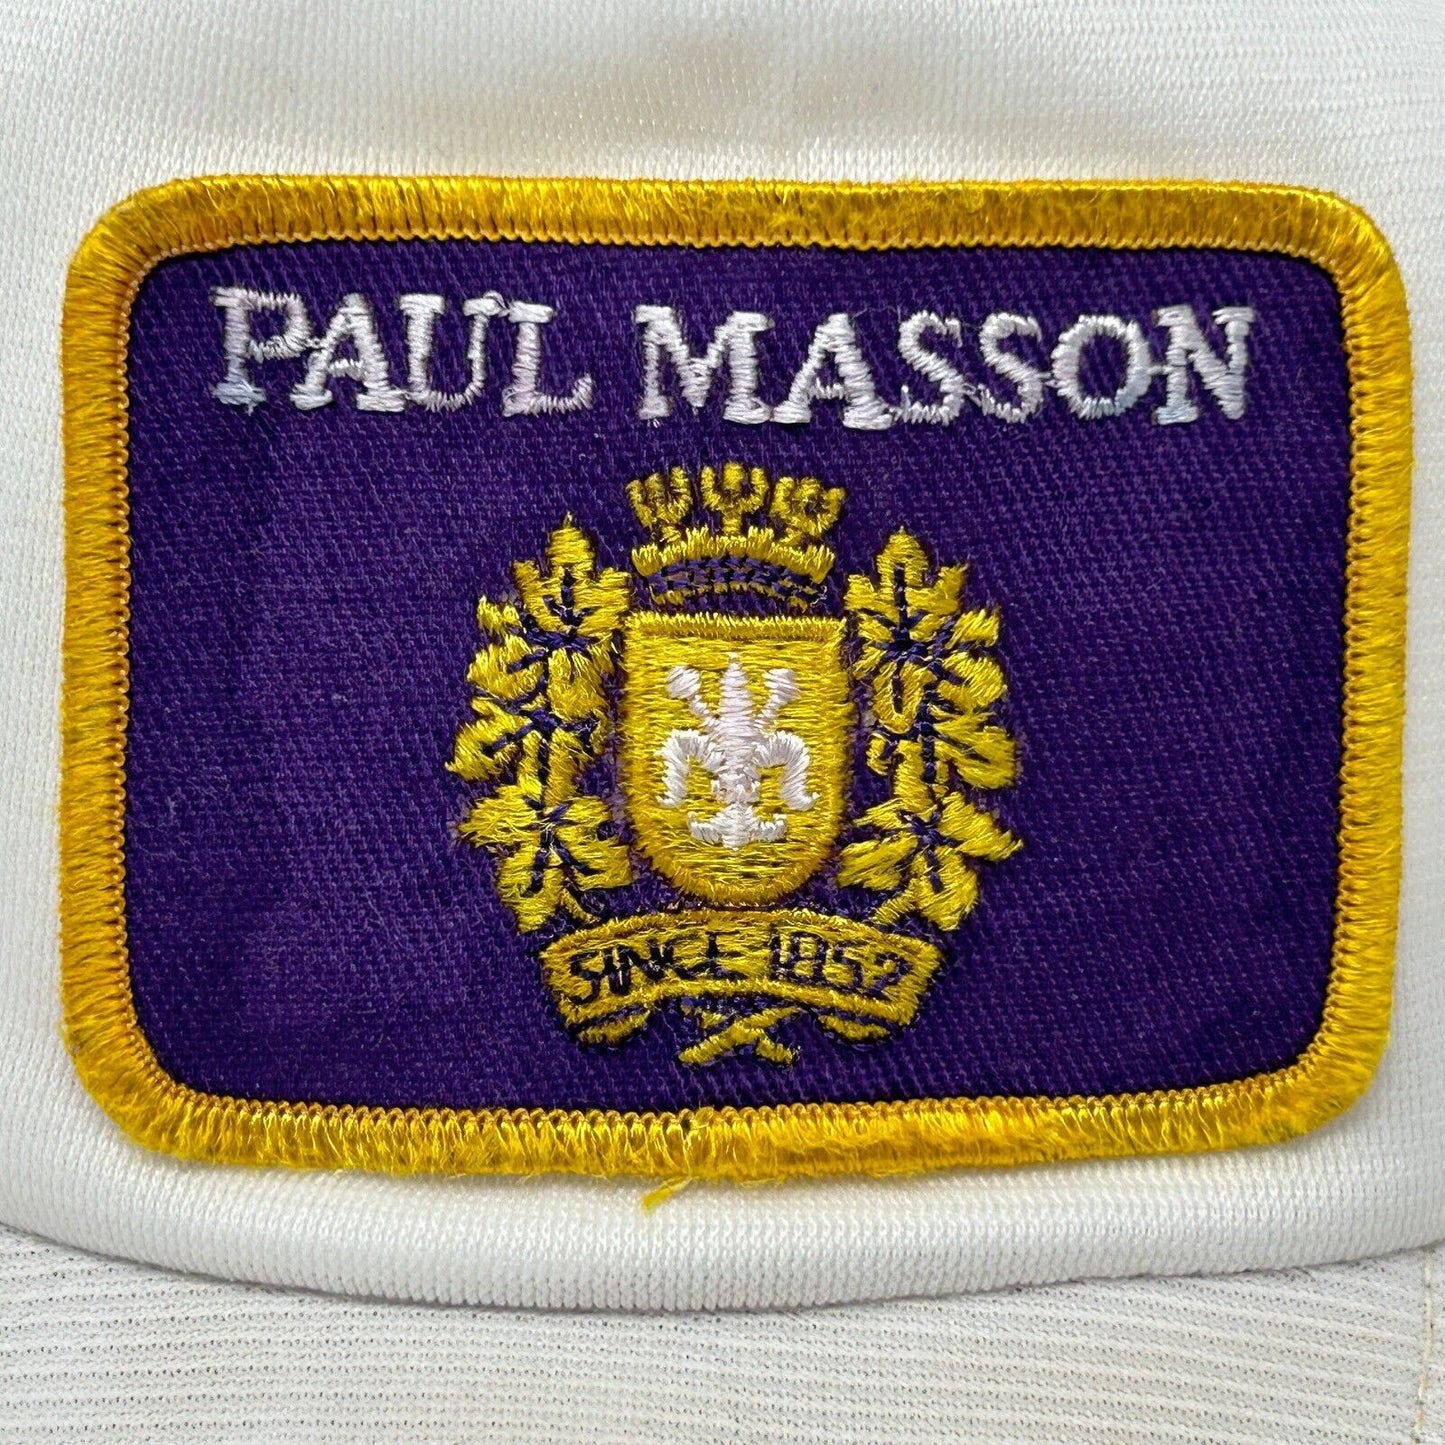 Paul Masson Brandy Vintage 80s Trucker Hat White Mesh Snapback Baseball Cap